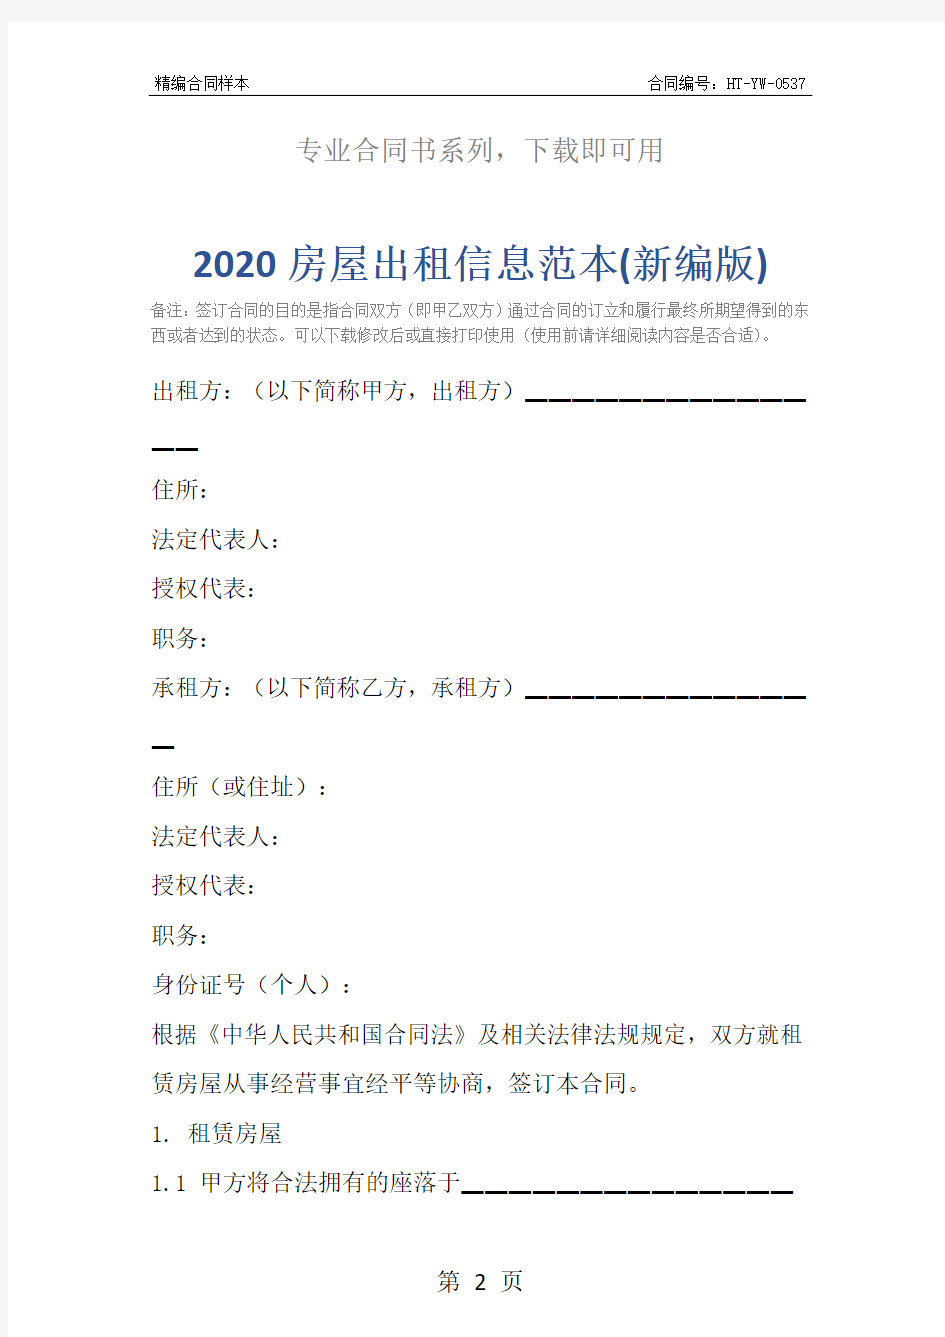 2020房屋出租信息范本(新编版)